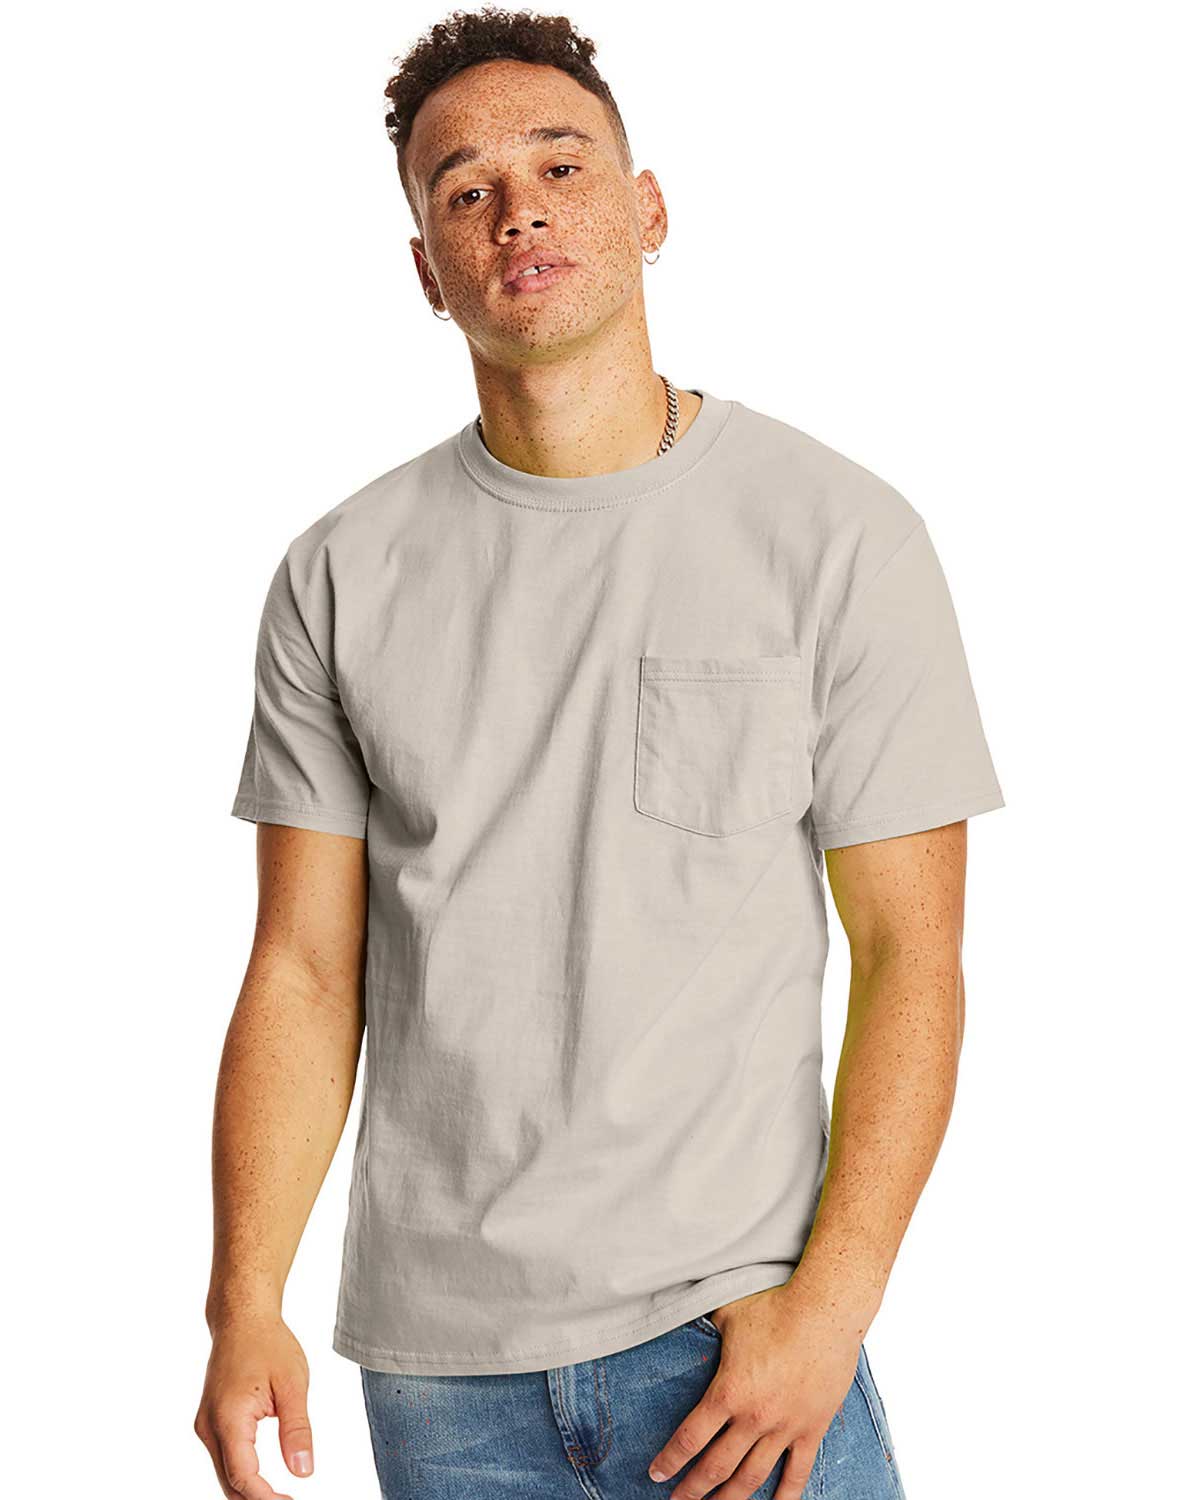 Hanes H5590 Men 6.1 Oz Tagless Pocket T-Shirt at Apparelstation